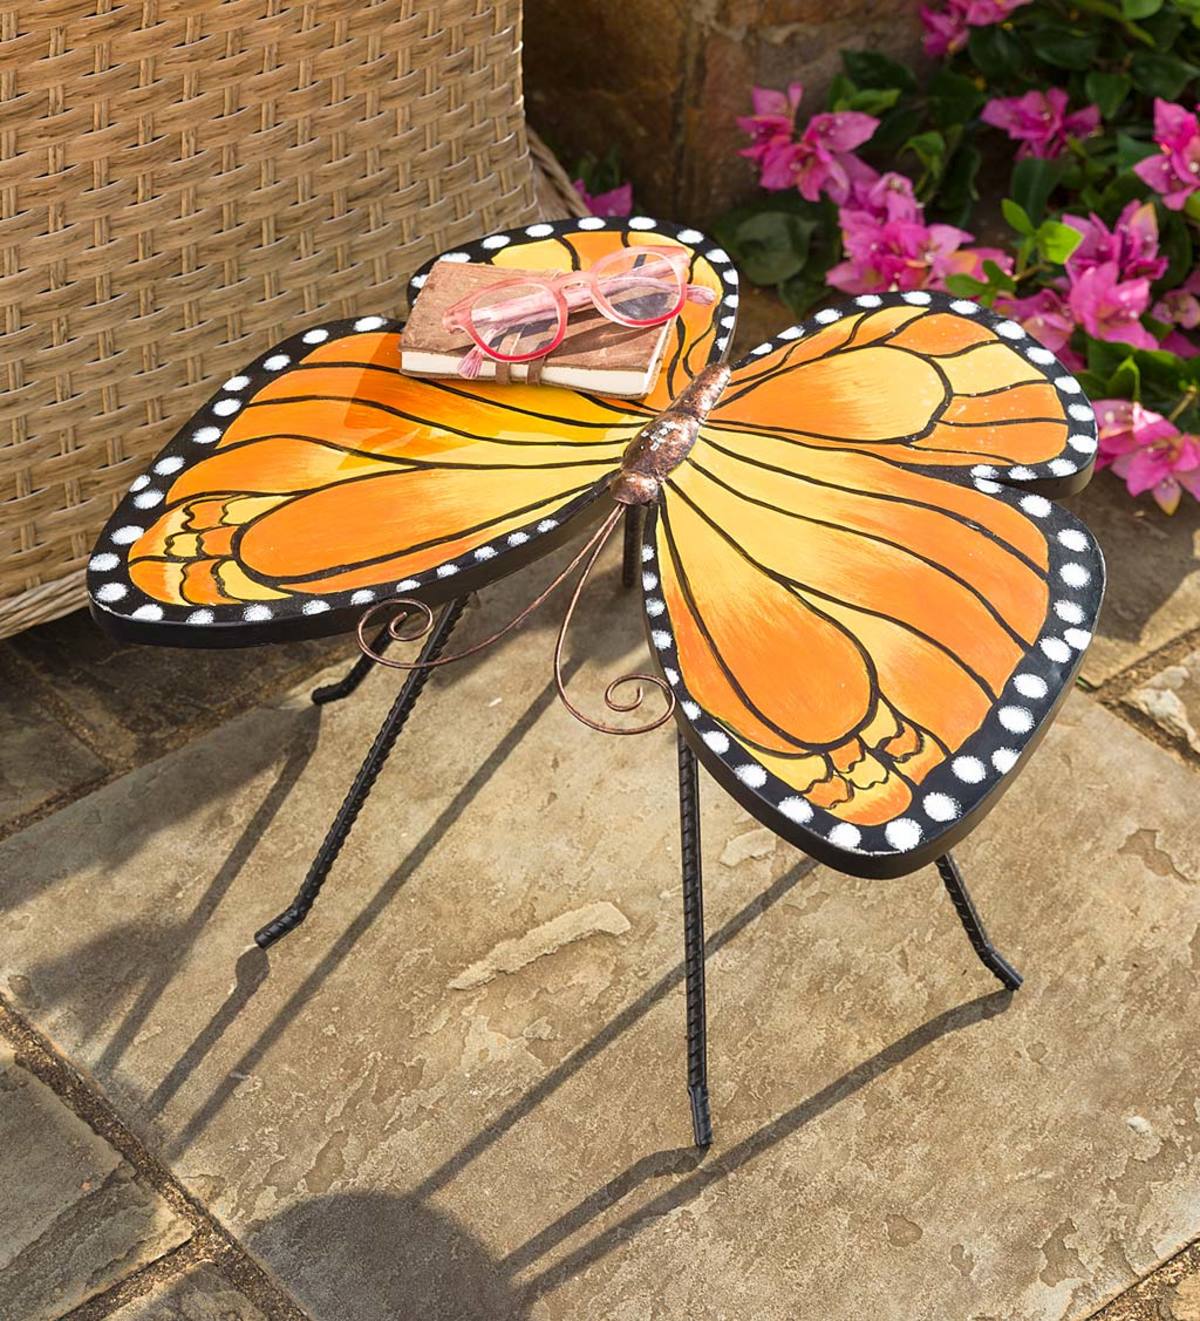 Metal Monarch Butterfly Side Table